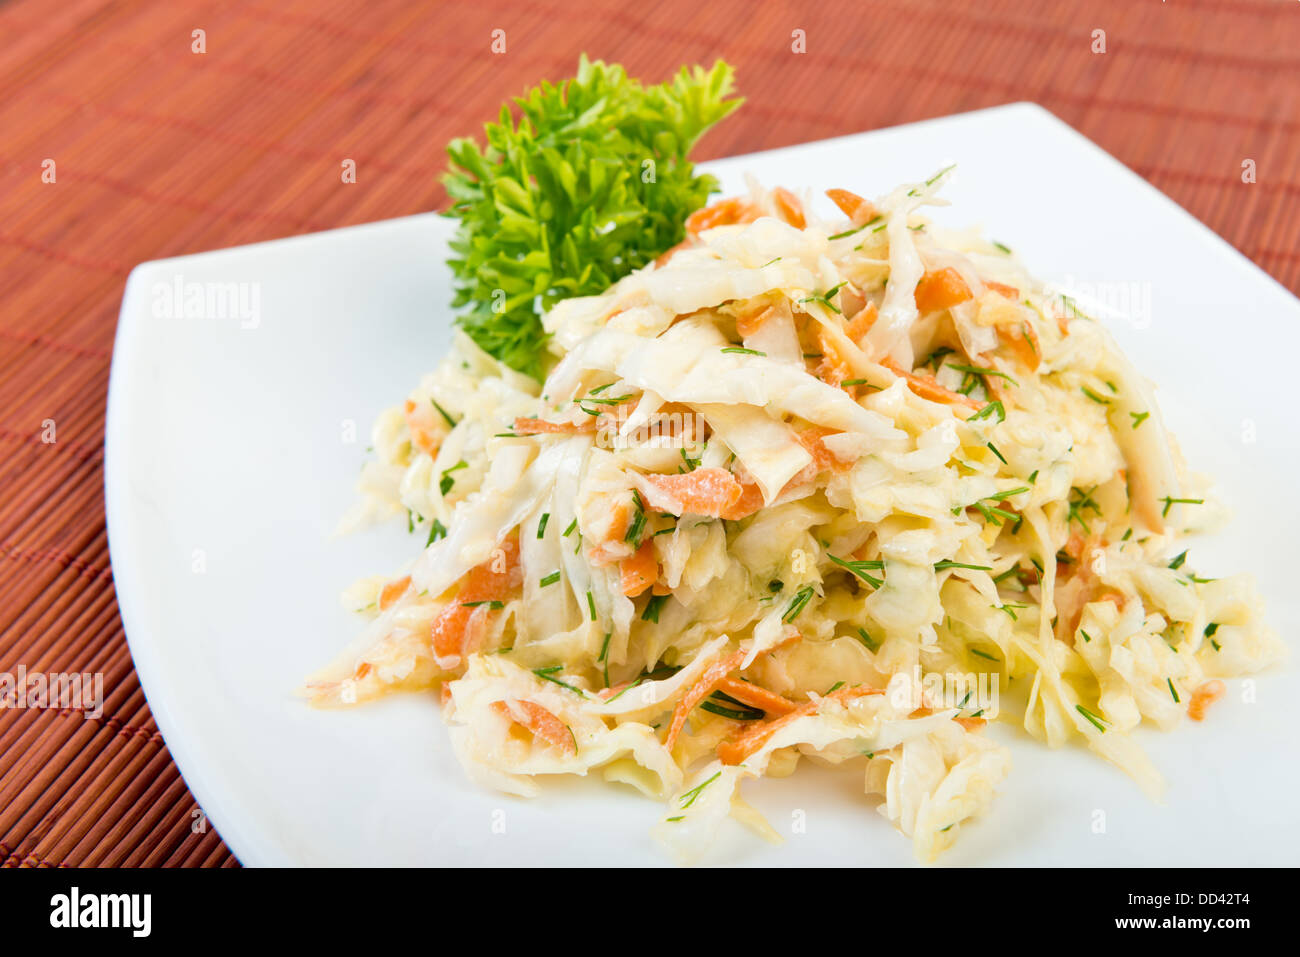 A basso contenuto di grassi vegetali coleslaw insalata (verze, carote, aneto, maionese) sulla piastra al ristorante tabella Foto Stock